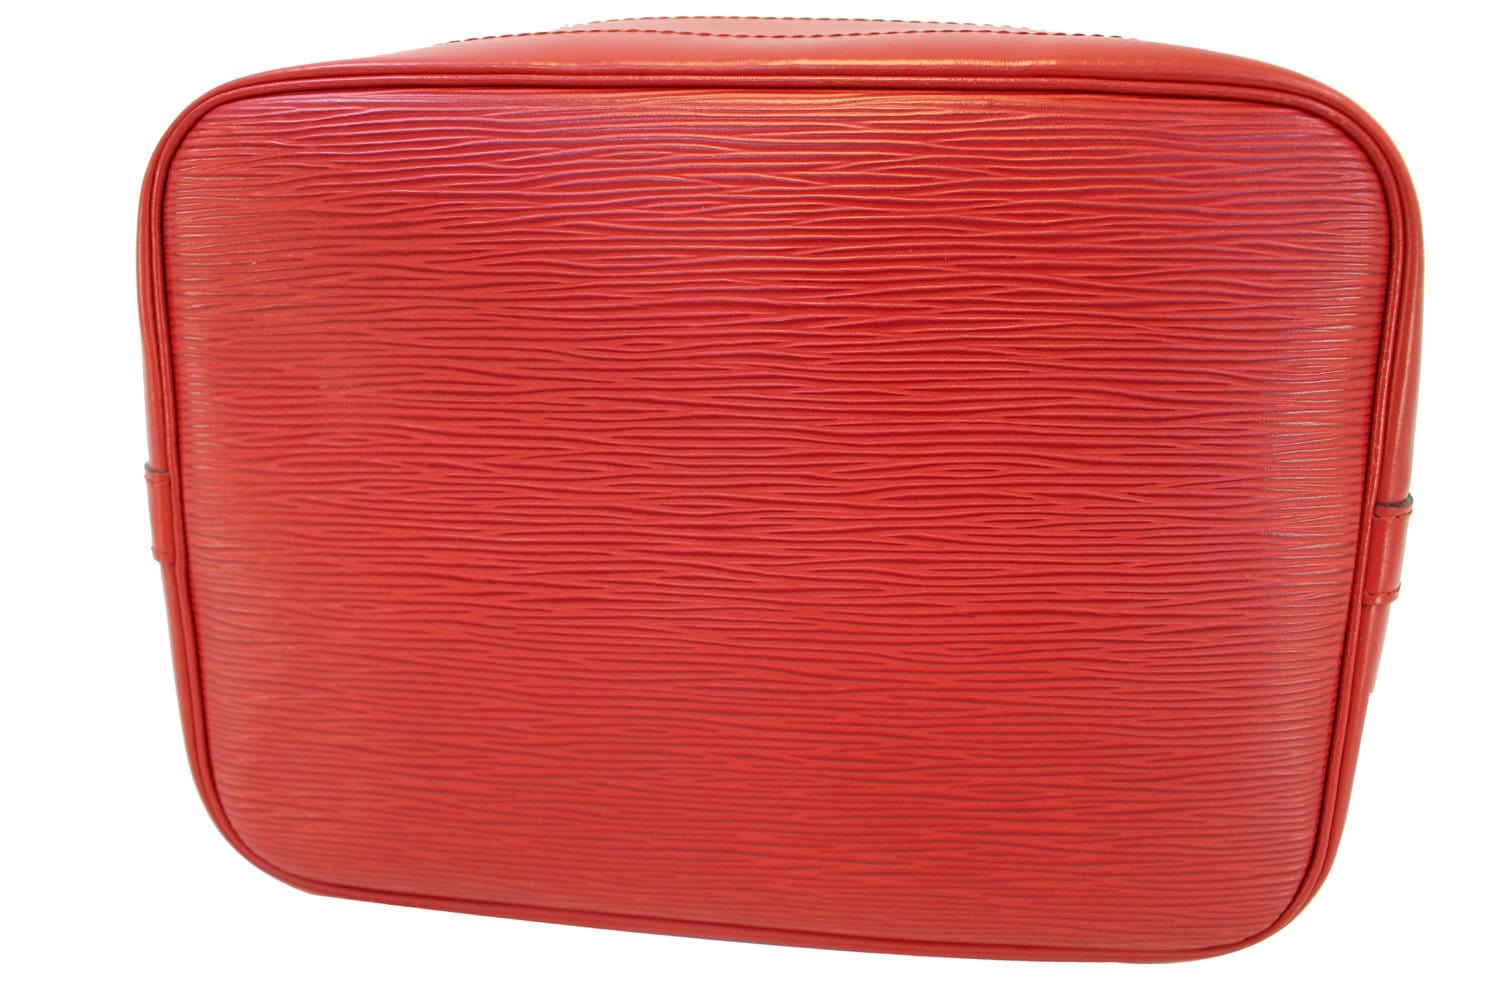 Authentic LOUIS VUITTON Epi Leather Red Large Noe Shoulder Bag TT1489